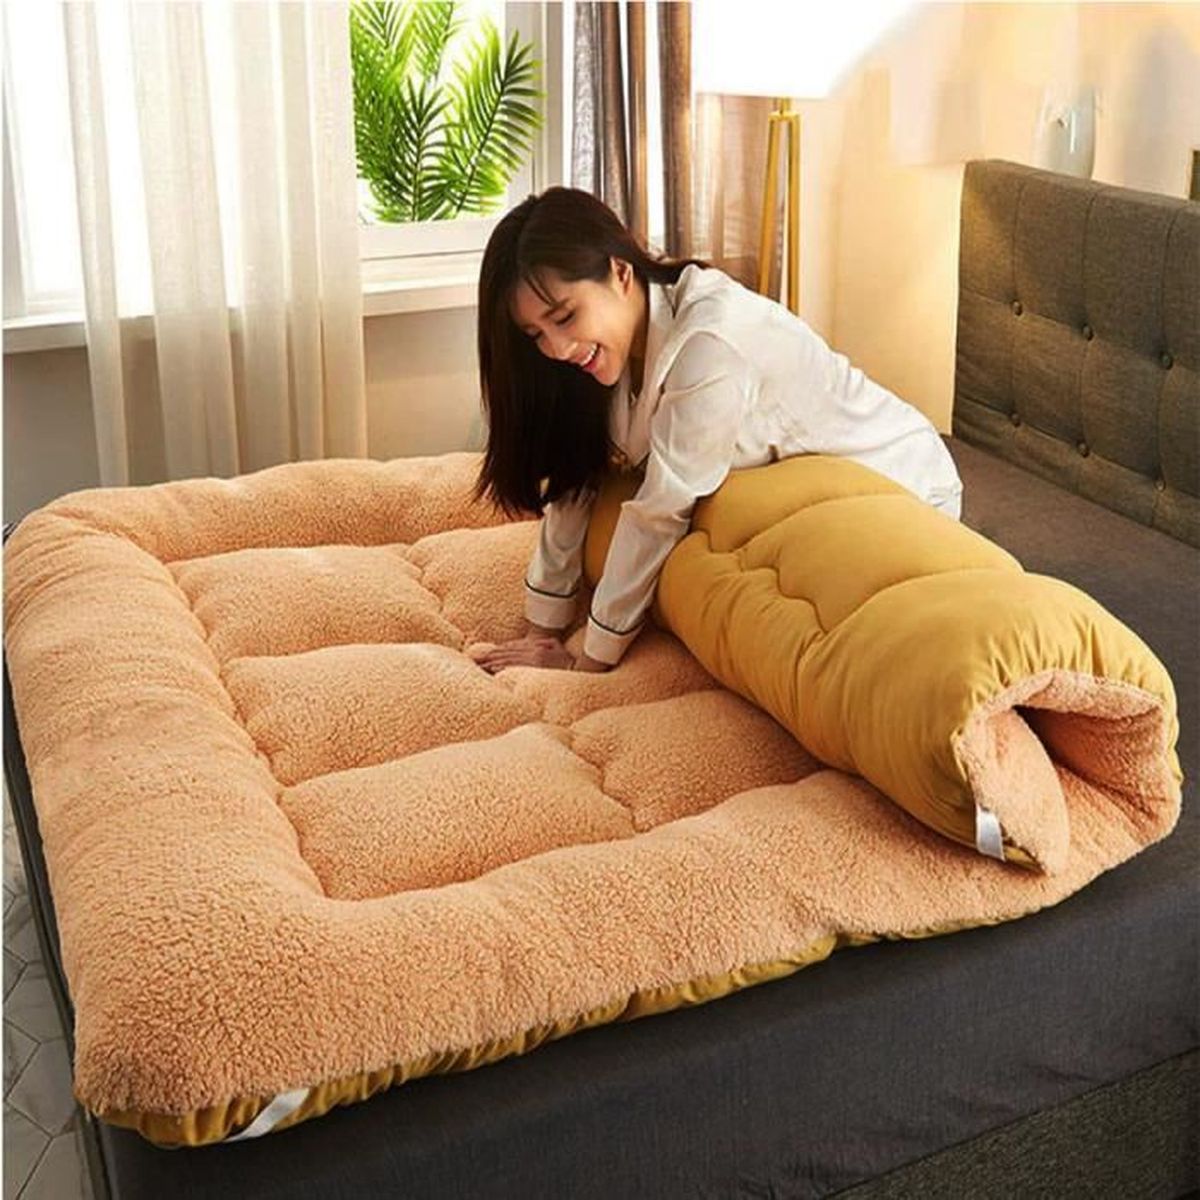 zyhfcfff-sd Matelas futon de sol japonais, tapis de sol tatami, matelas de  camping portable, tapis de couchage pour enfants, chaise longue pliable